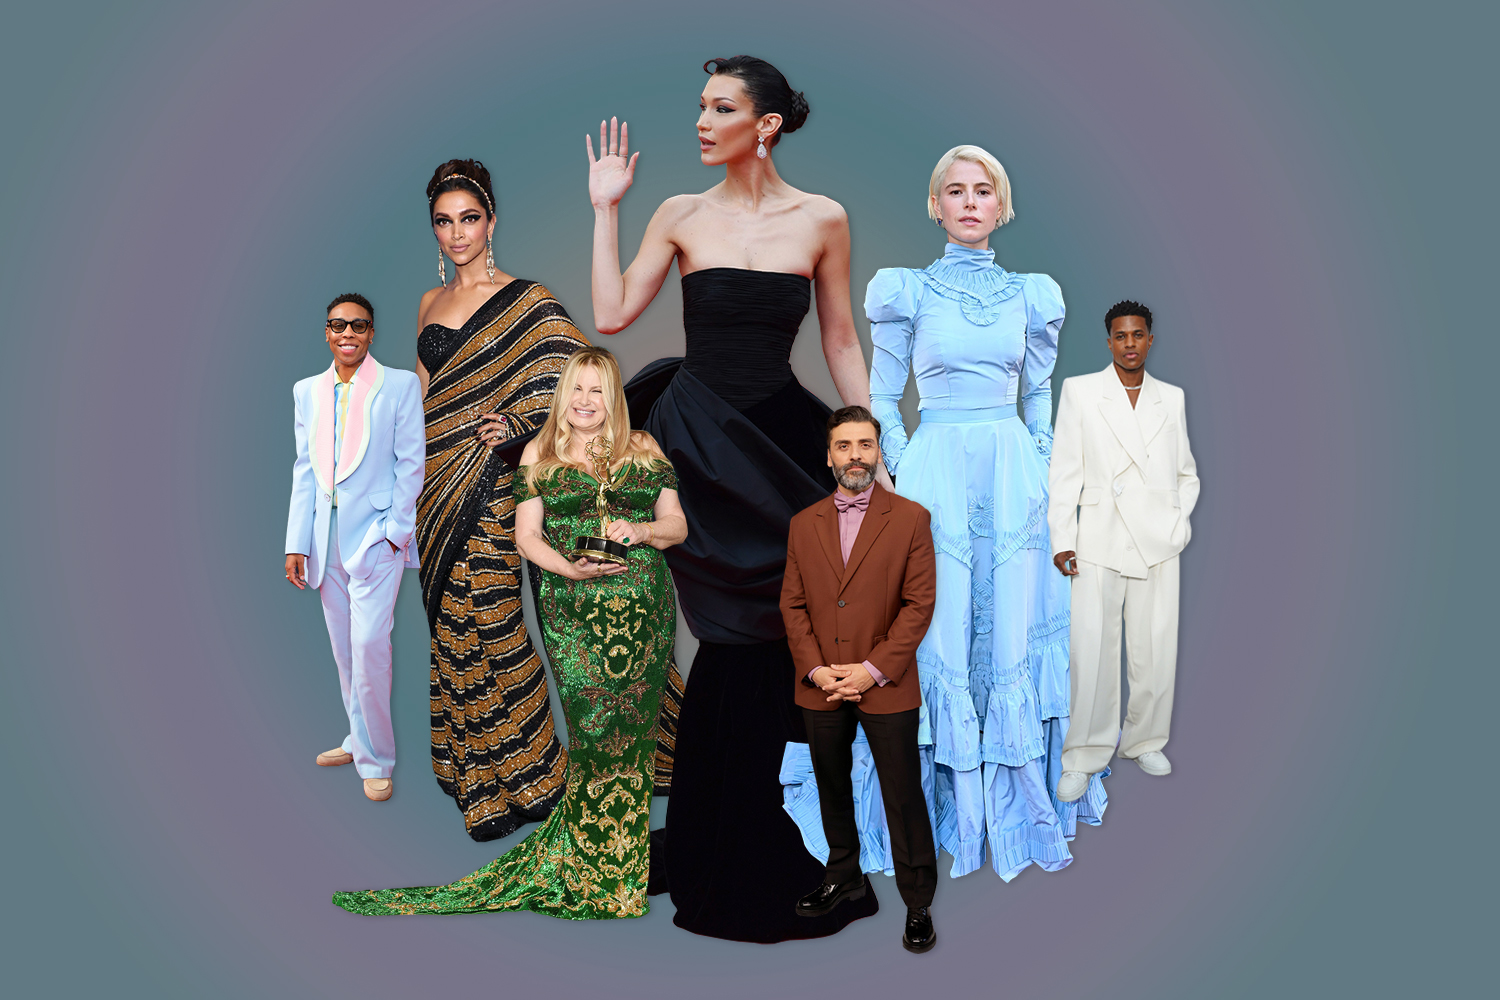 Lewis Hamilton dresses to impress at Louis Vuitton show alongside Kim  Kardashian